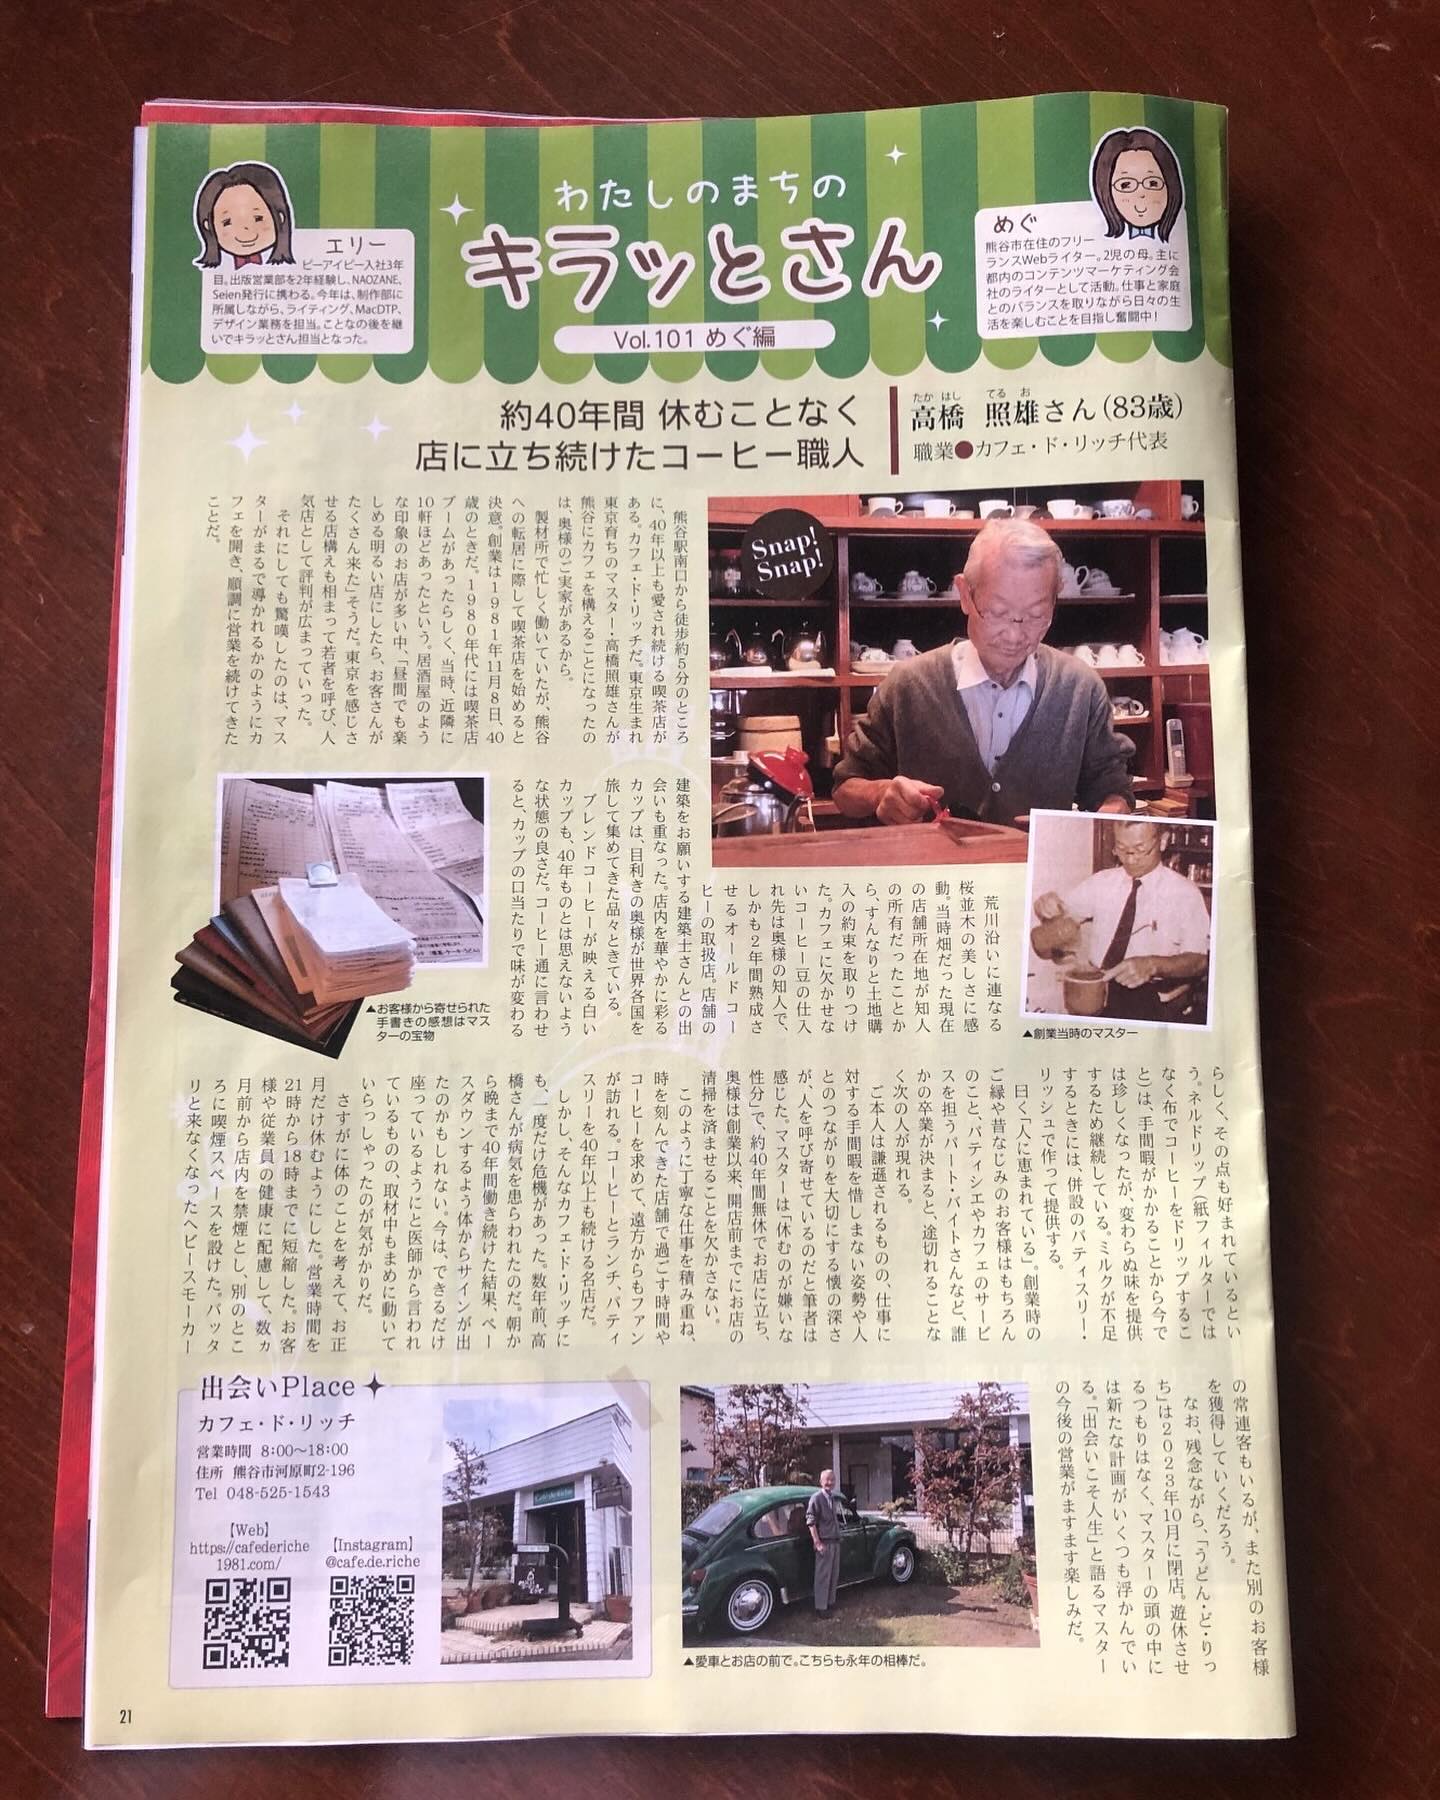 いつもご覧いただき有難うございます。
熊谷市に配布されている情報誌「NAOZANE」の
きらっとさんのコーナーに当店マスターが掲載されております。
皆様のおかげで４０年以上続く熊谷の老舗喫茶店。
マスターの愛や想いが綴られていますので、ぜひご覧ください。